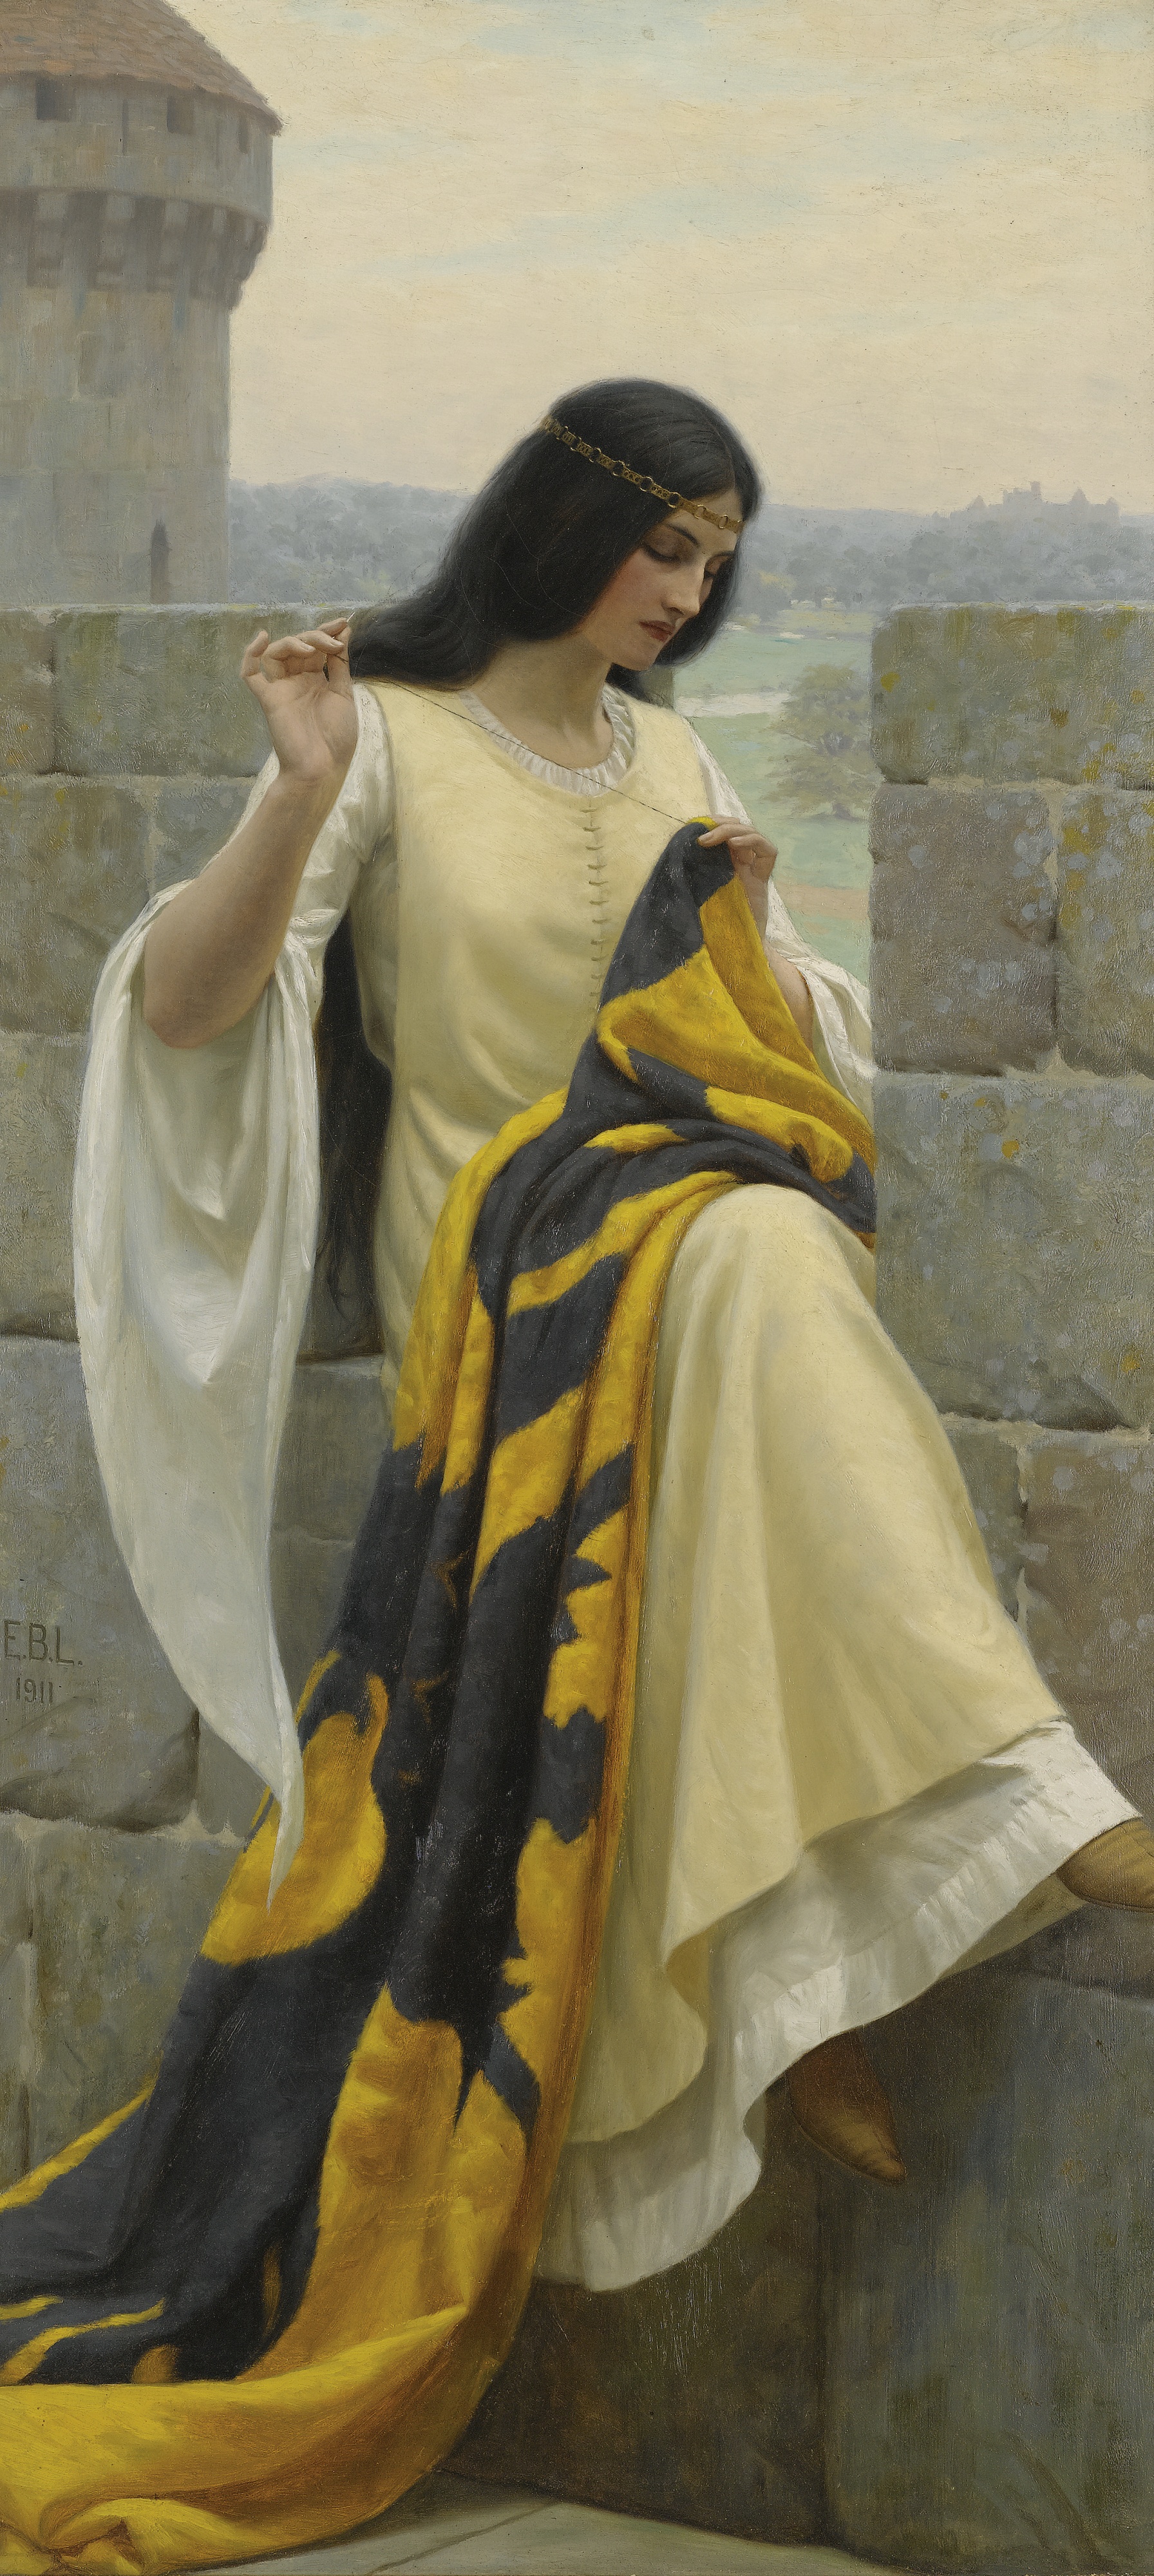 縫旗幟的少女 by Edmund Blair Leighton - 1911 - 98 cm × 44 cm 